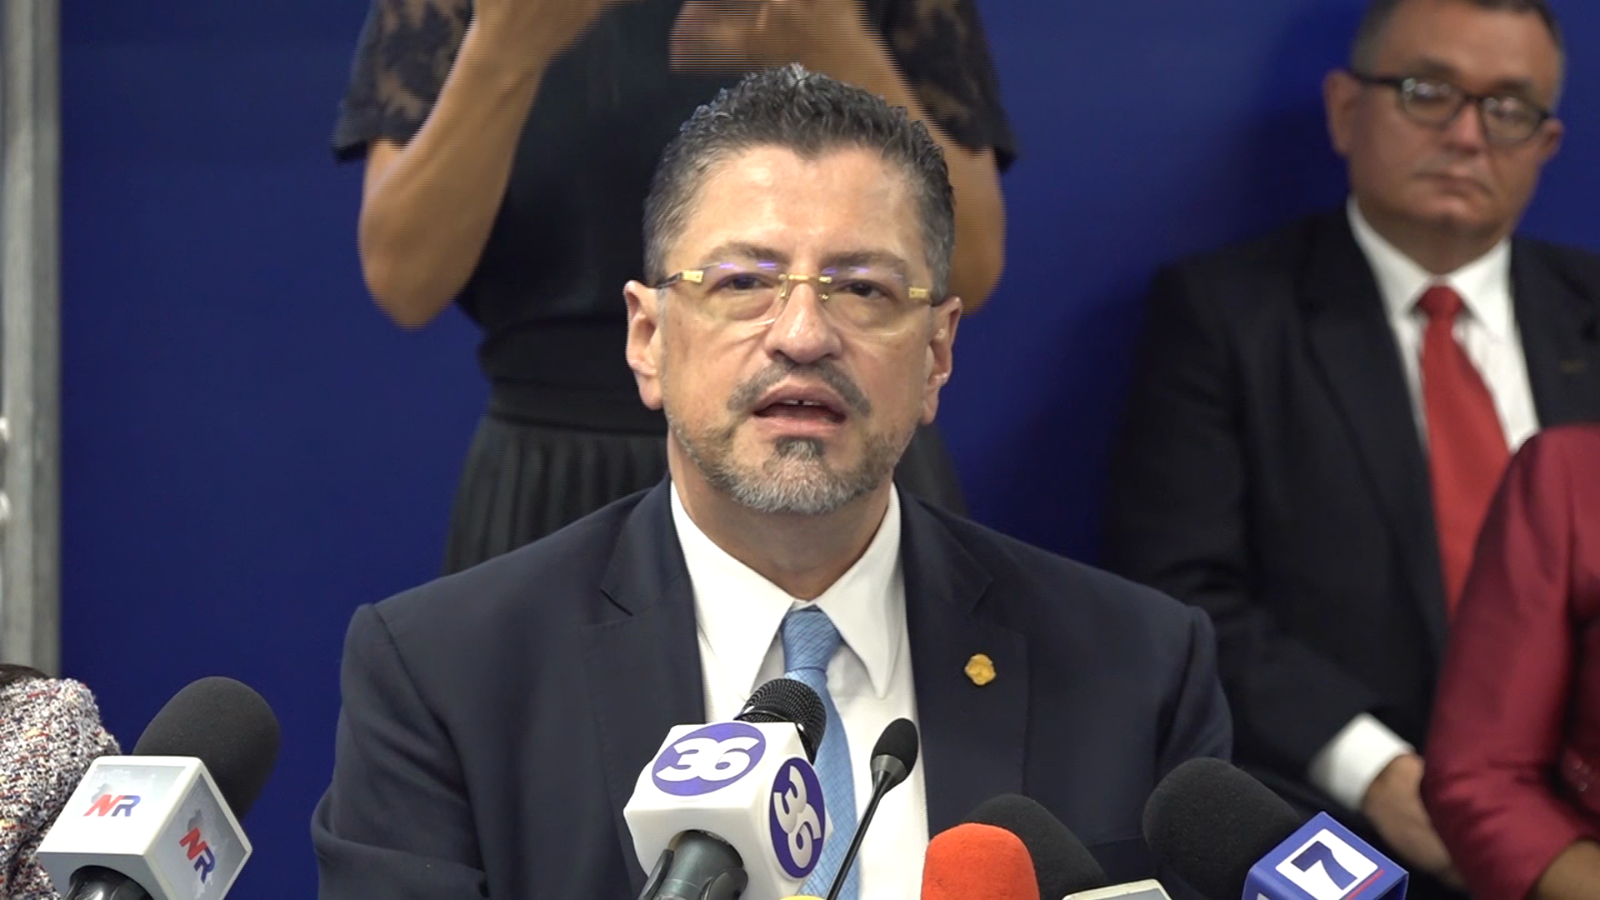 Rodrigo Chaves asume la presidencia de Costa Rica el 8 de mayo: ¿cuáles son sus principales desafíos?  |  Video